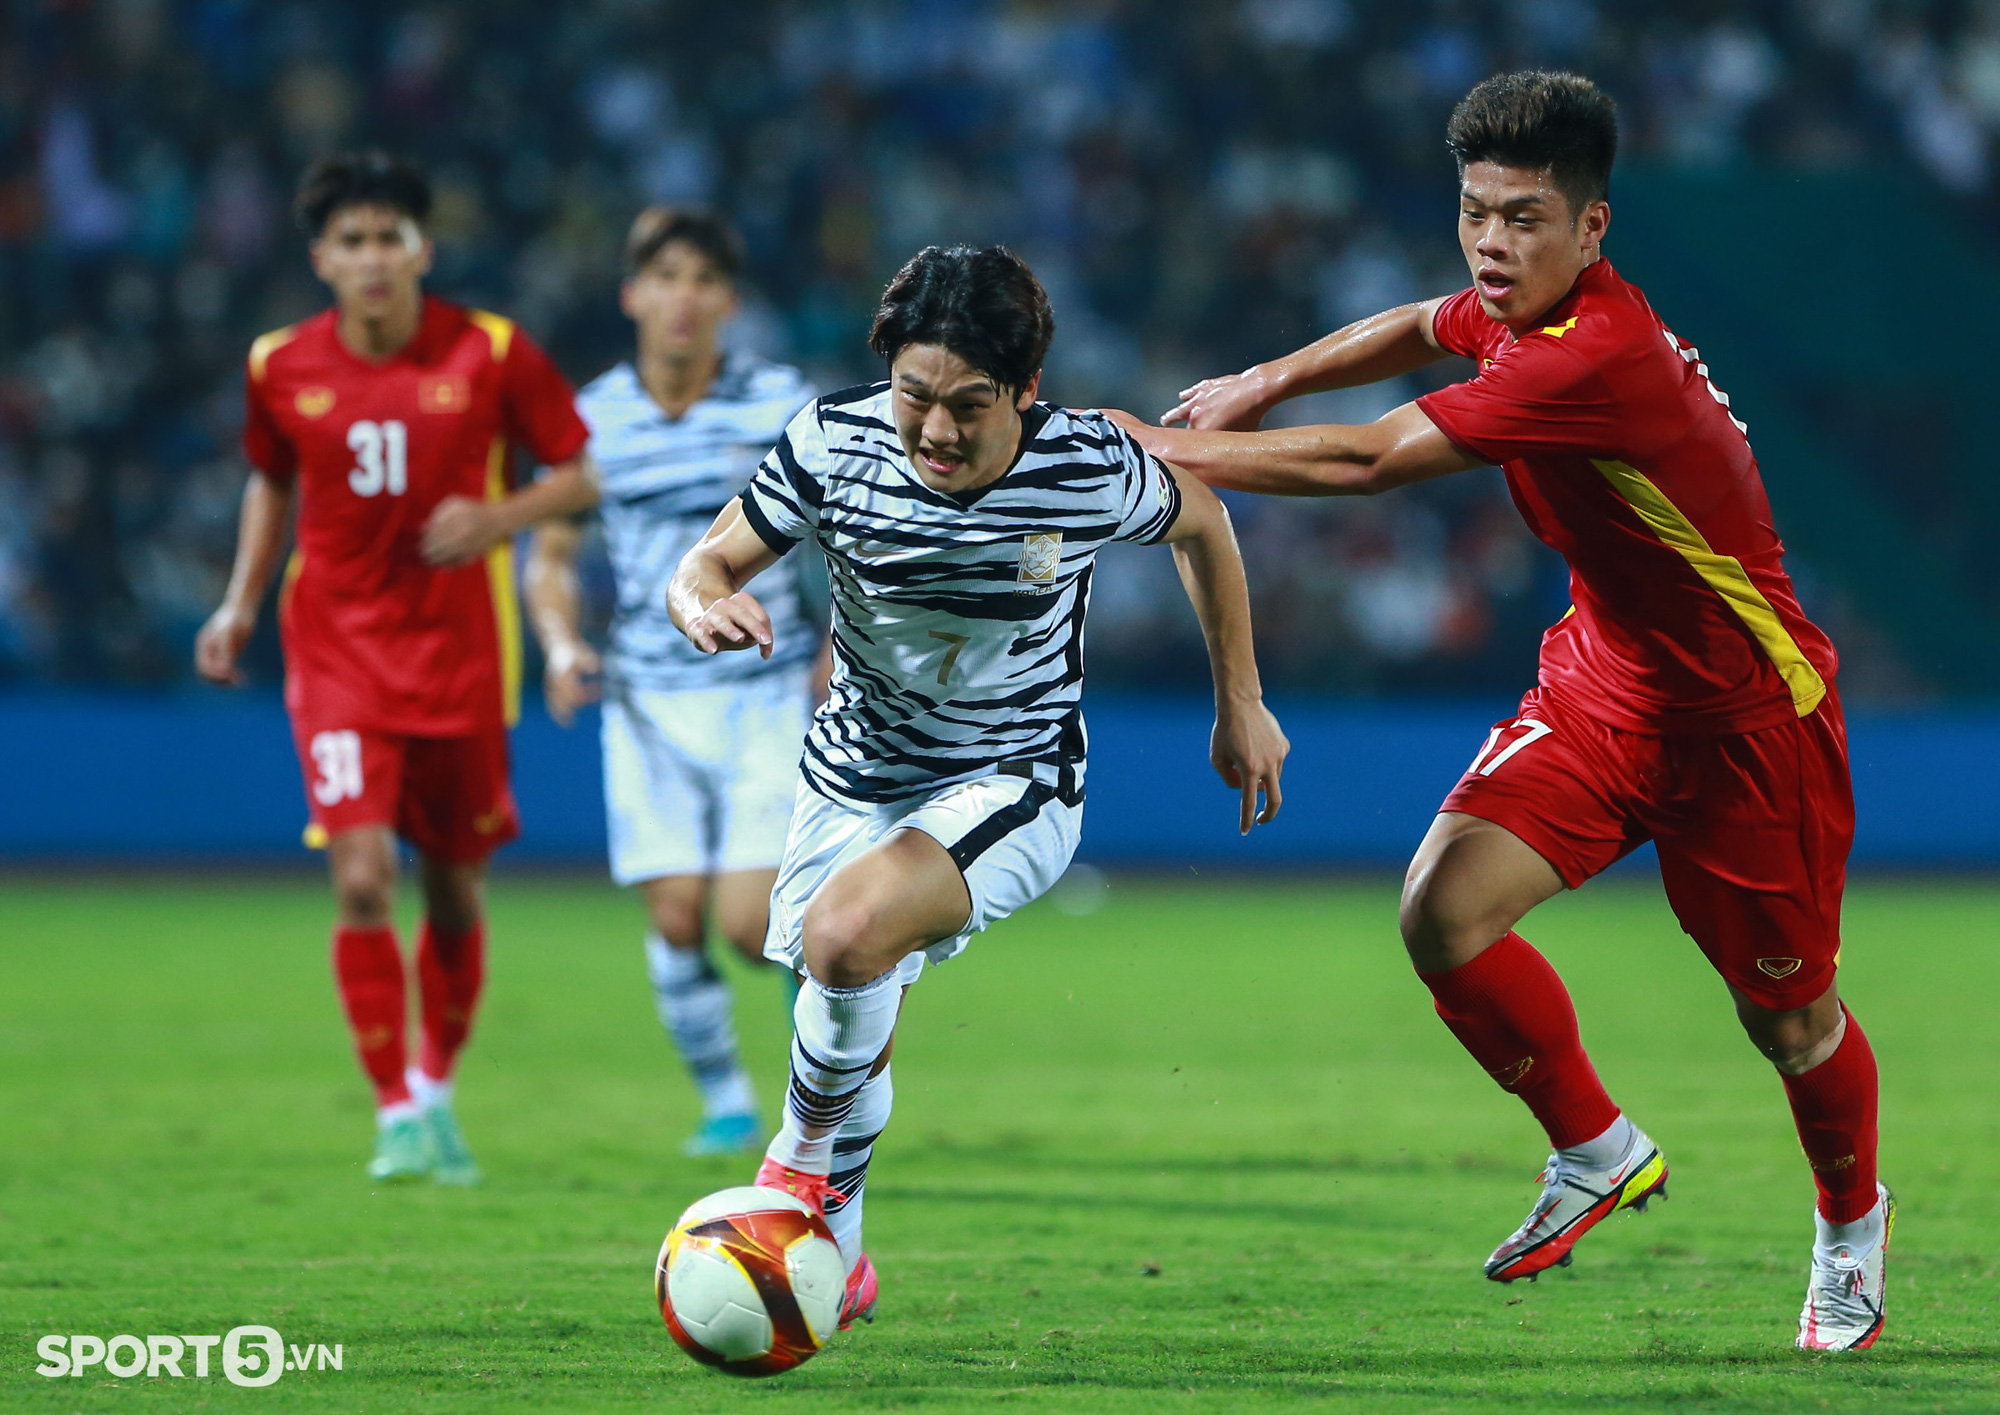 HLV Park Hang-seo cúi đầu suy tư sau khi U23 Việt Nam gỡ hoà U20 Hàn Quốc - Ảnh 10.